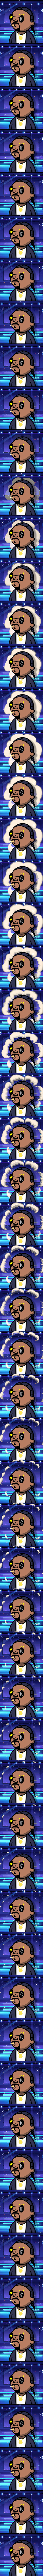 Snoop Nubbie